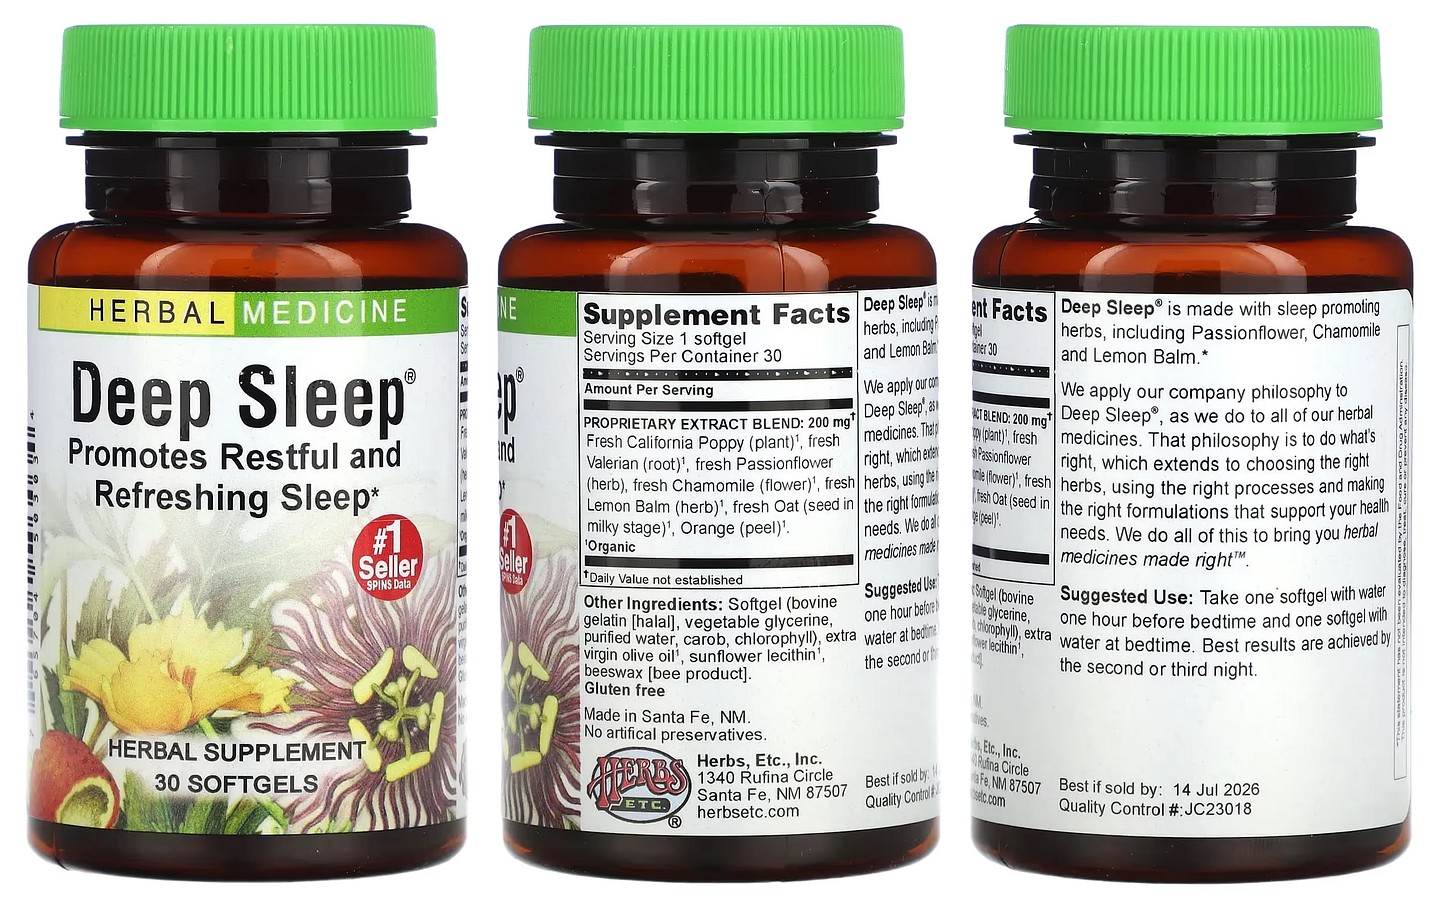 Herbs Etc, Deep Sleep packaging